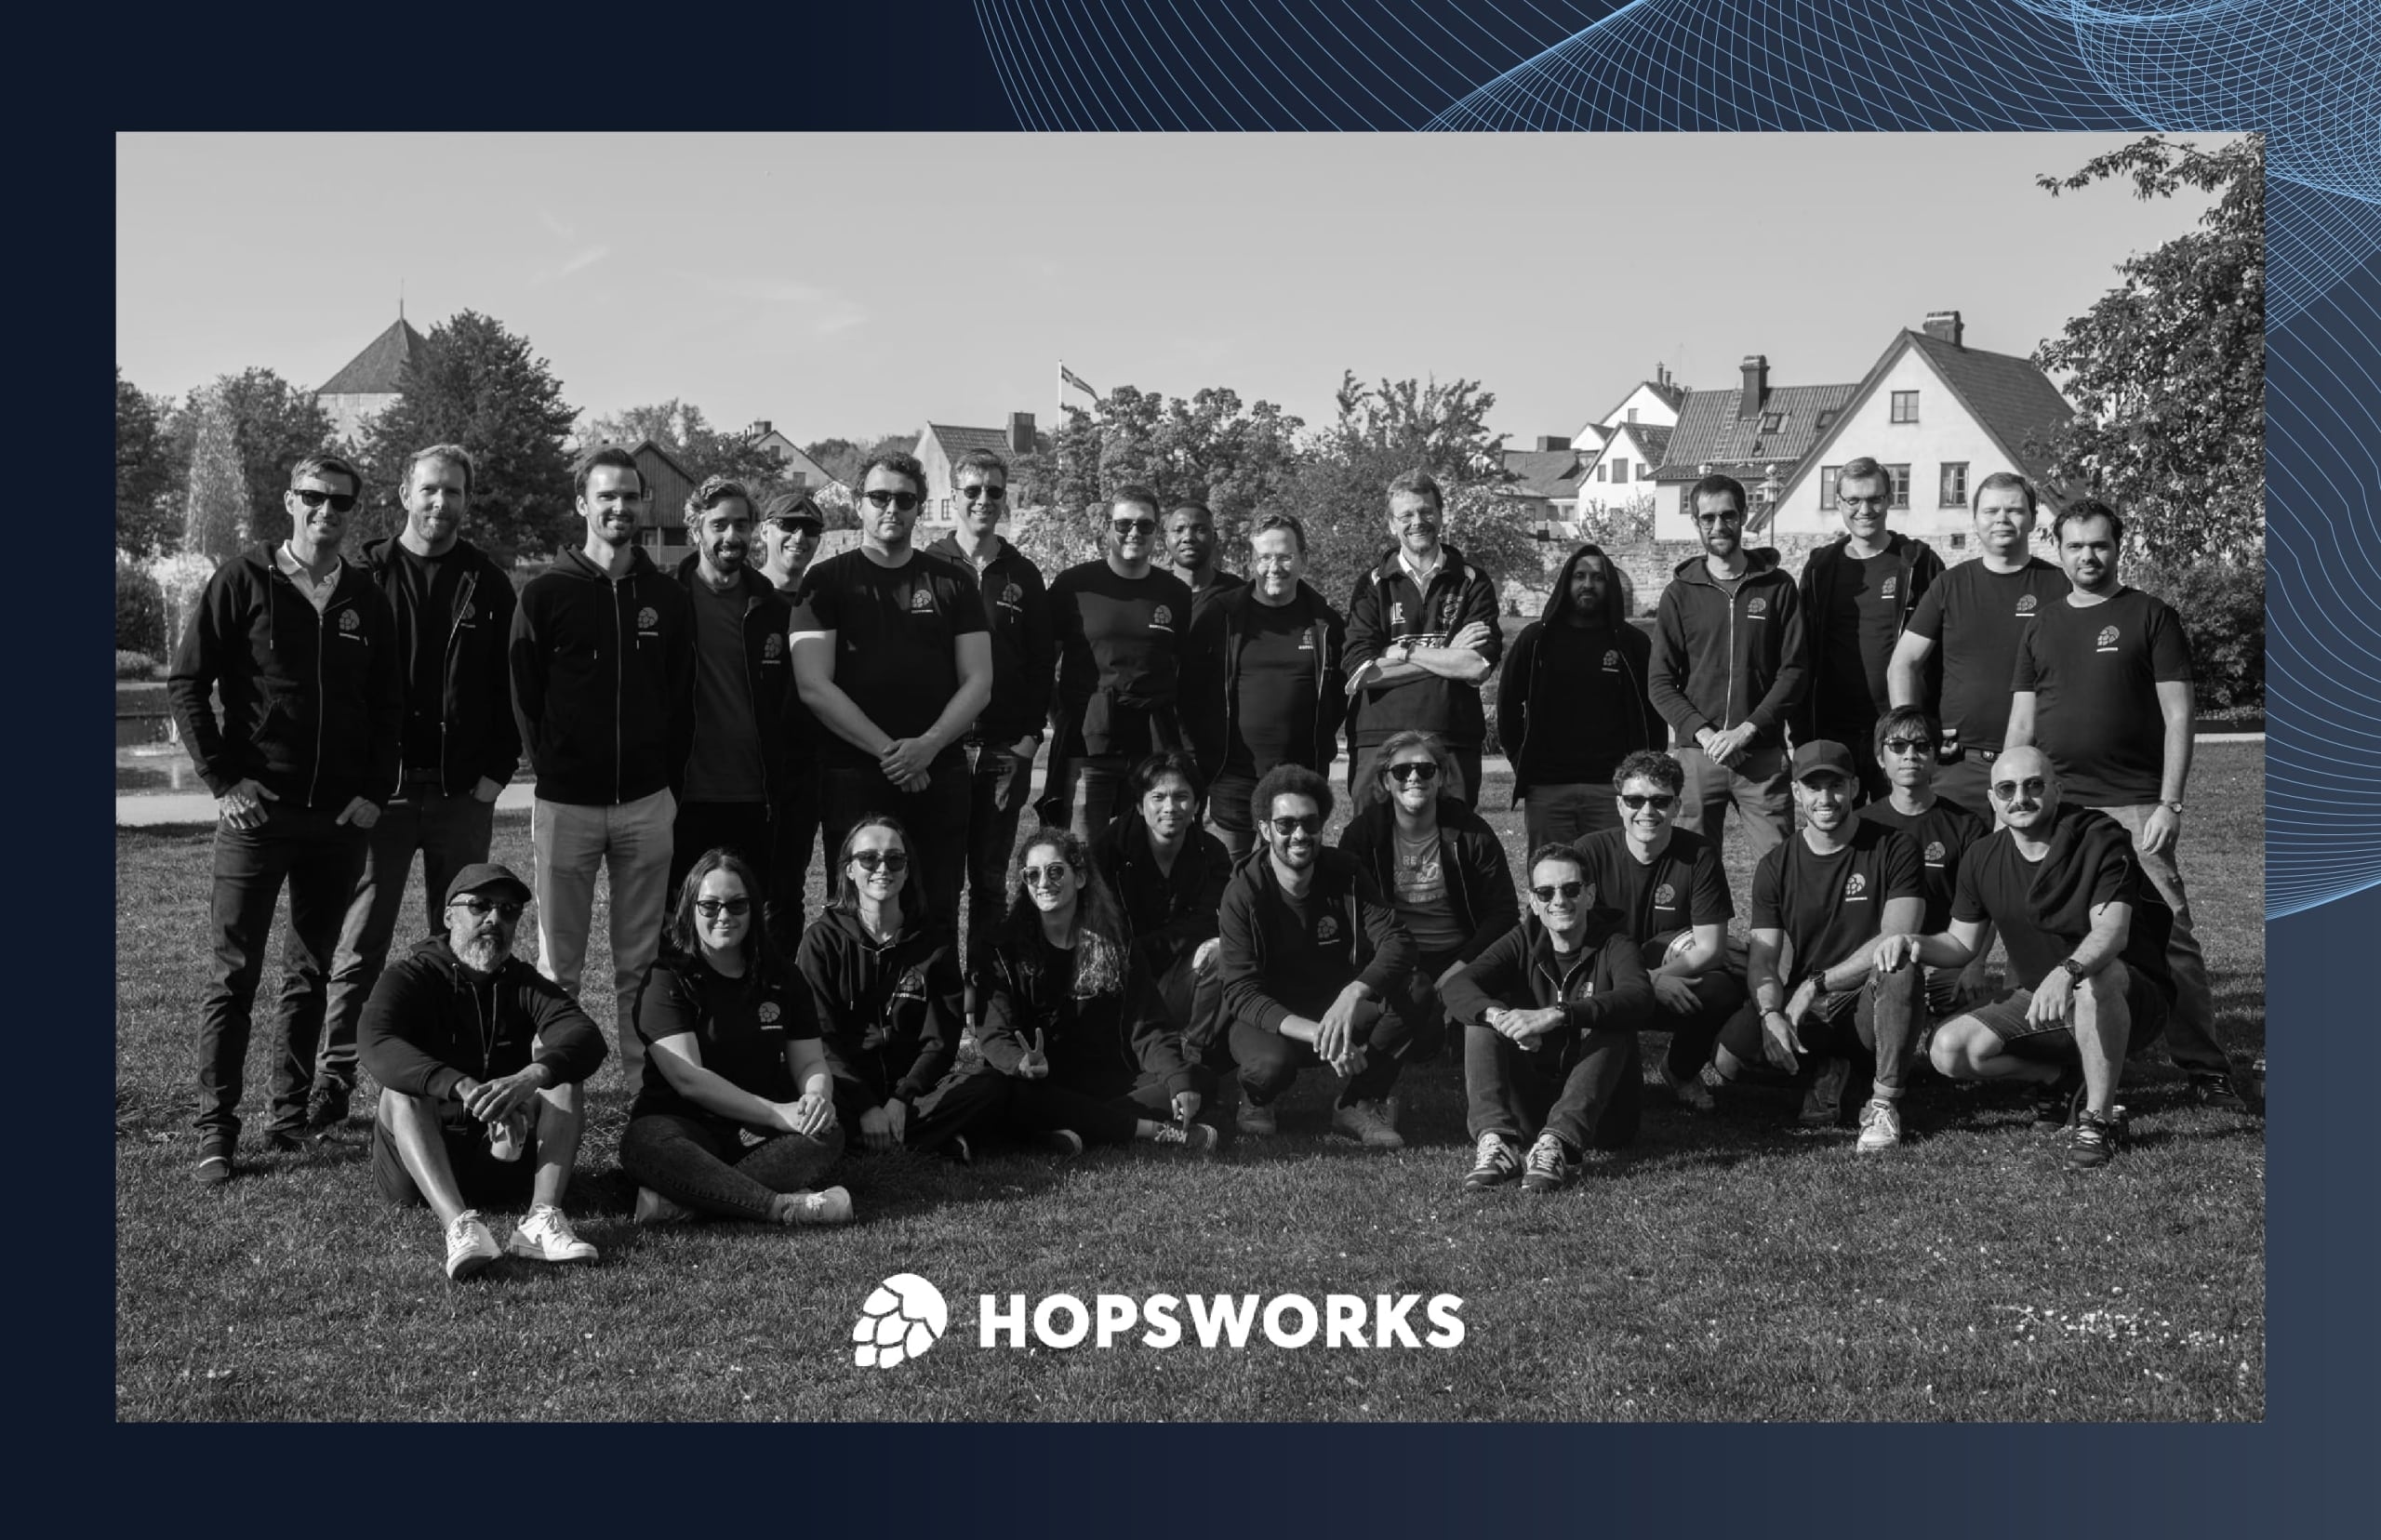 Hopsworks team utomhus framför byggnader, som illustrerar teamandan på Hopsworks